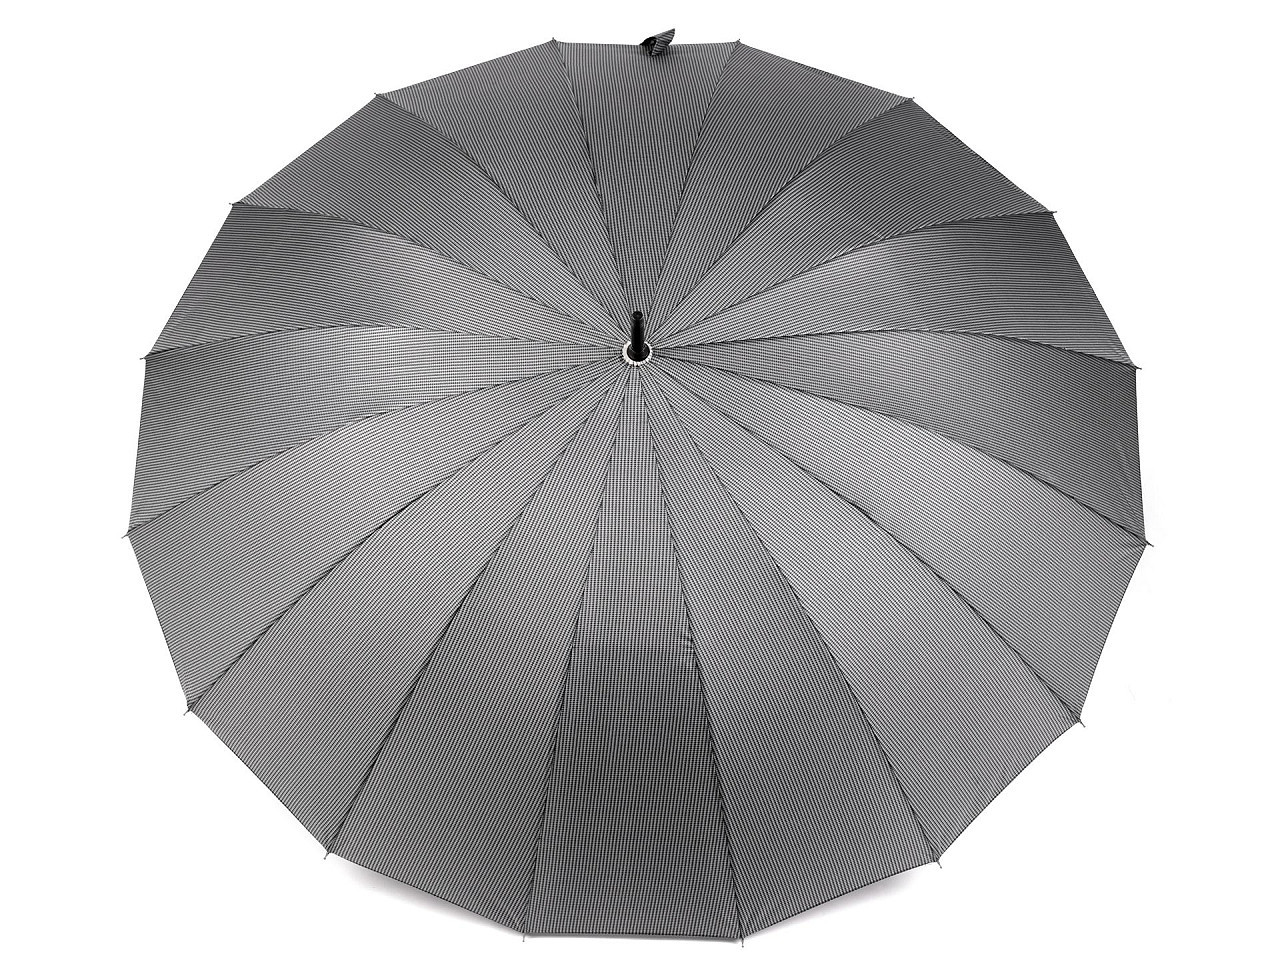 Velký rodinný vystřelovací deštník, barva 5 šedá střední pepito